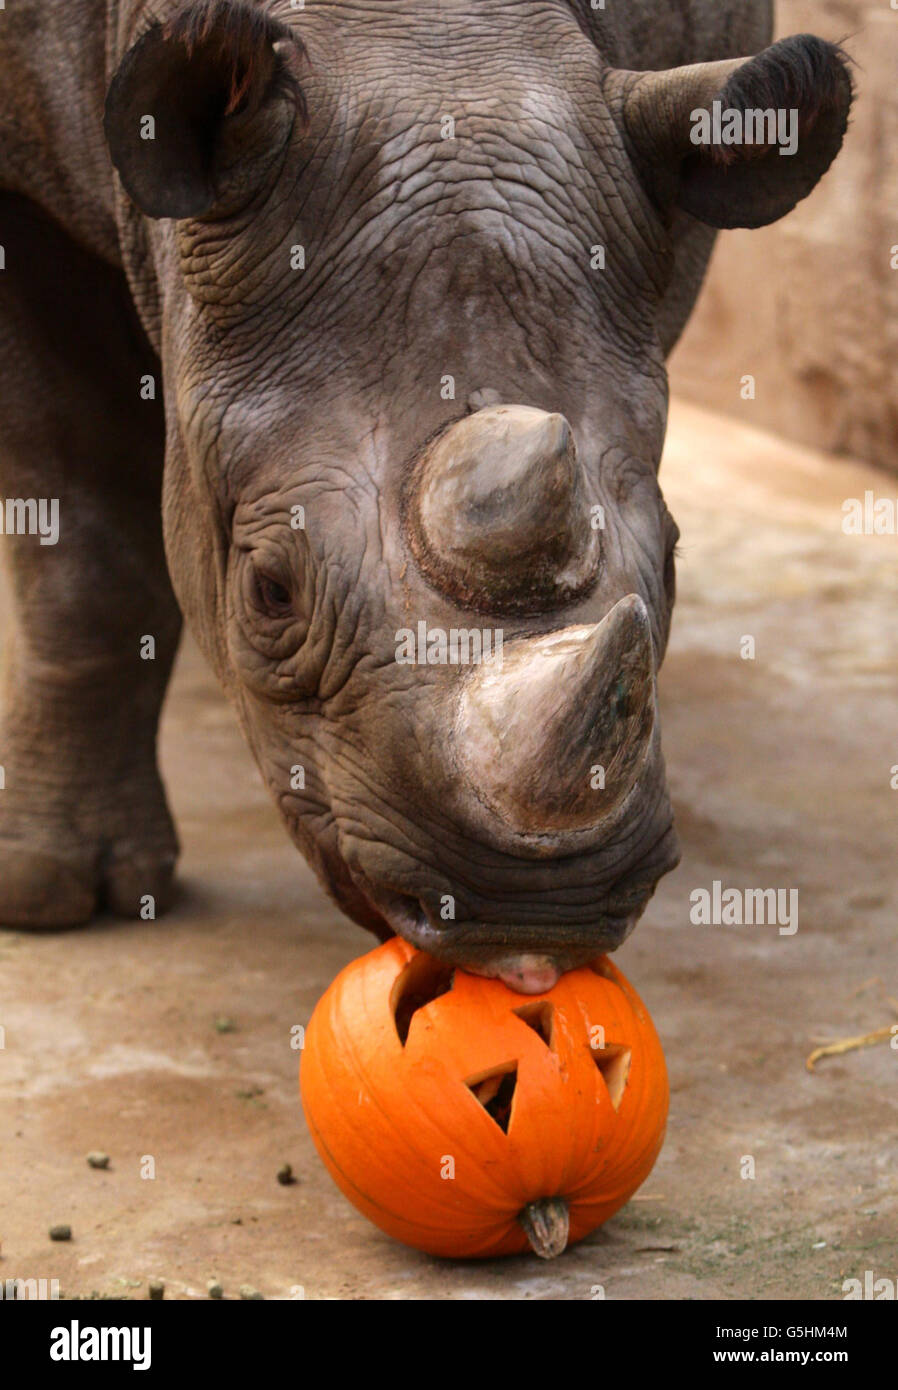 Les rhinocéros profitent d'un cadeau d'halloween.EMA Elsa un rhinocéros noir au zoo de Chester aime la citrouille pour Halloween. Banque D'Images